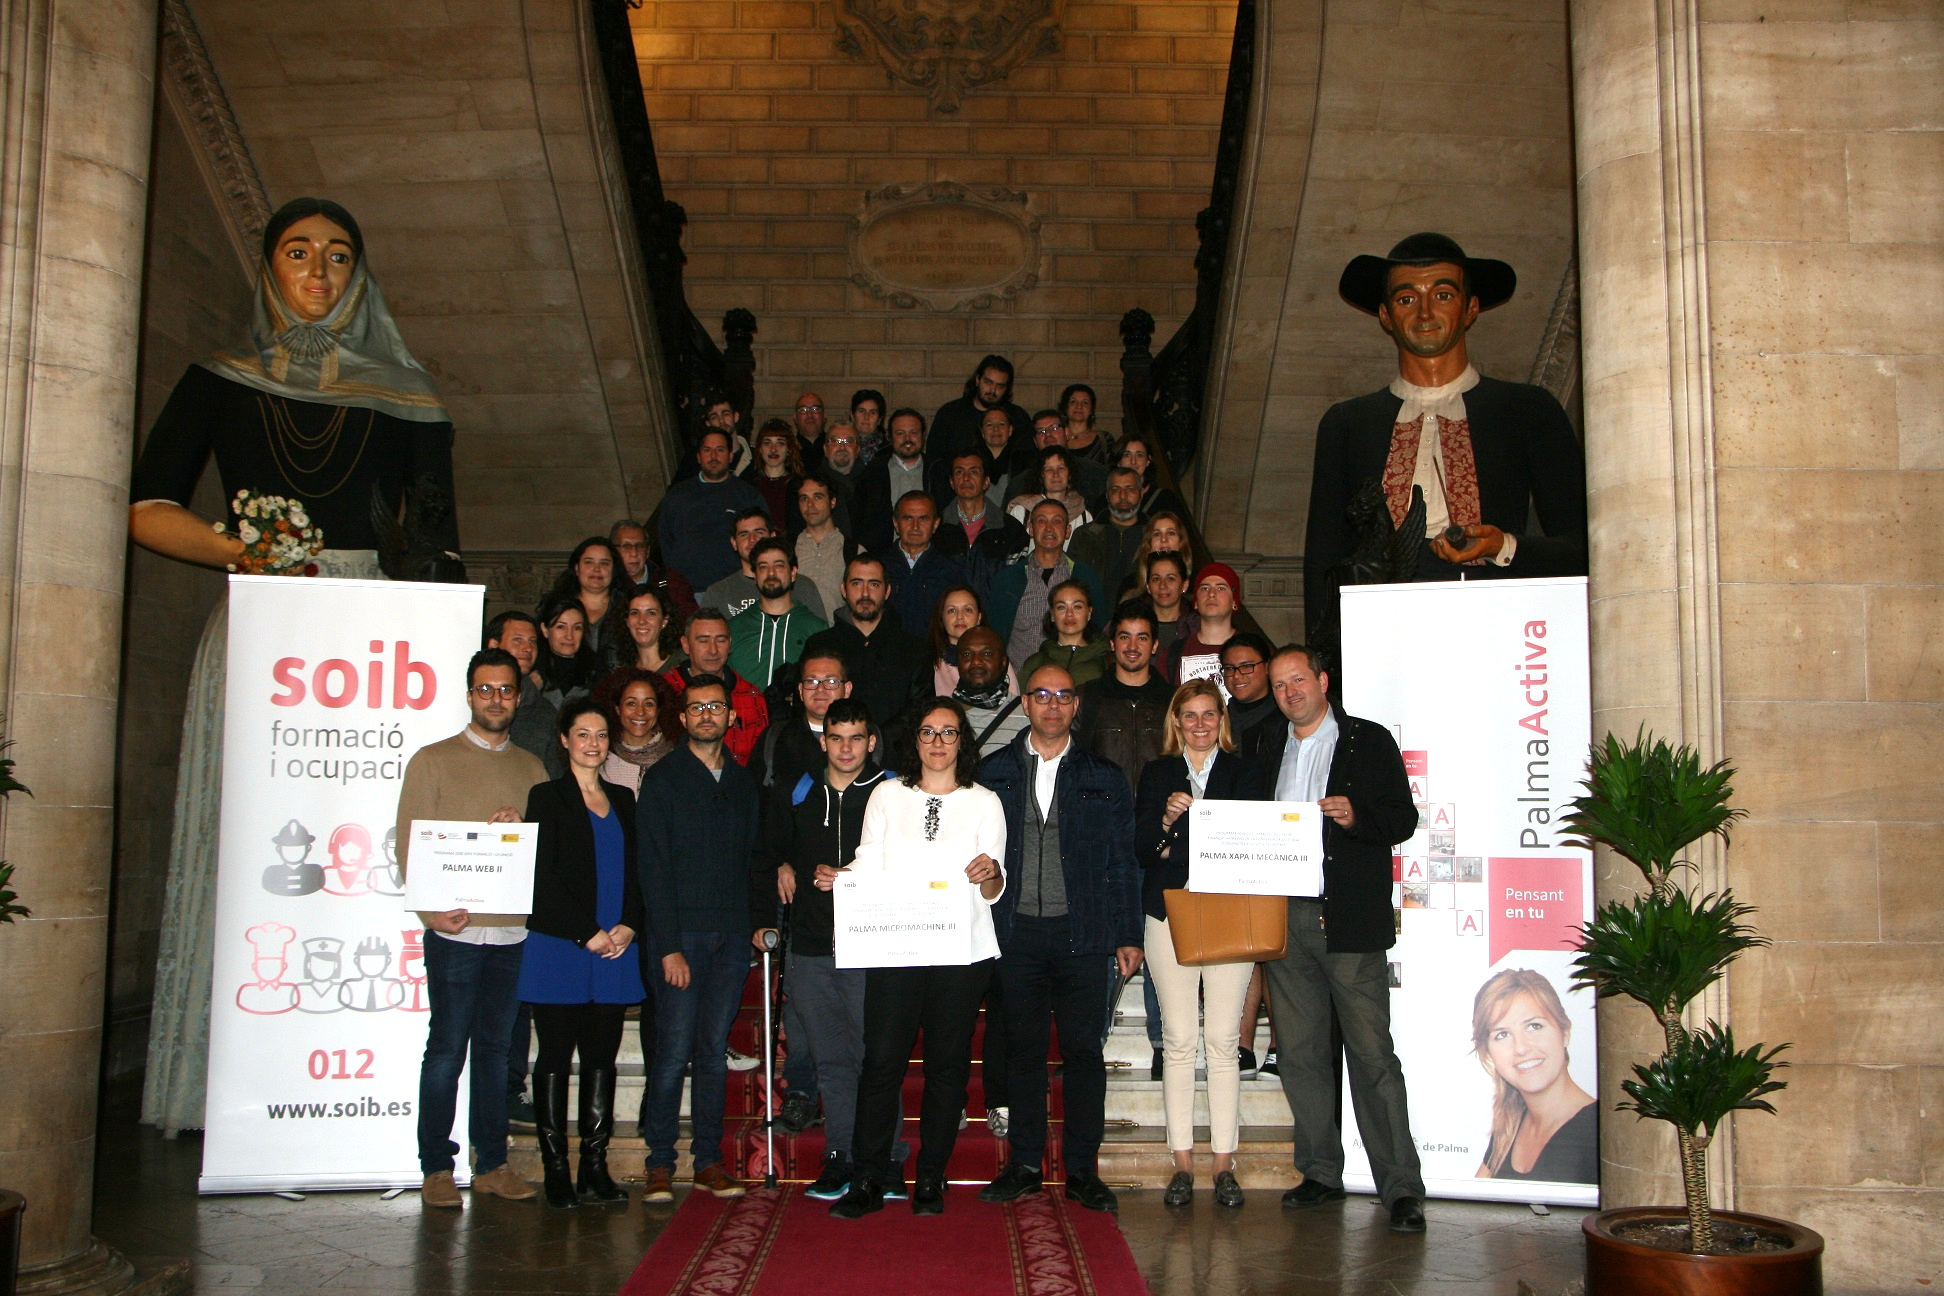 30 alumnos-trabajadores comienzan a trabajar en el Ayuntamiento de Palma gracias a los programas de formación y empleo del SOIB